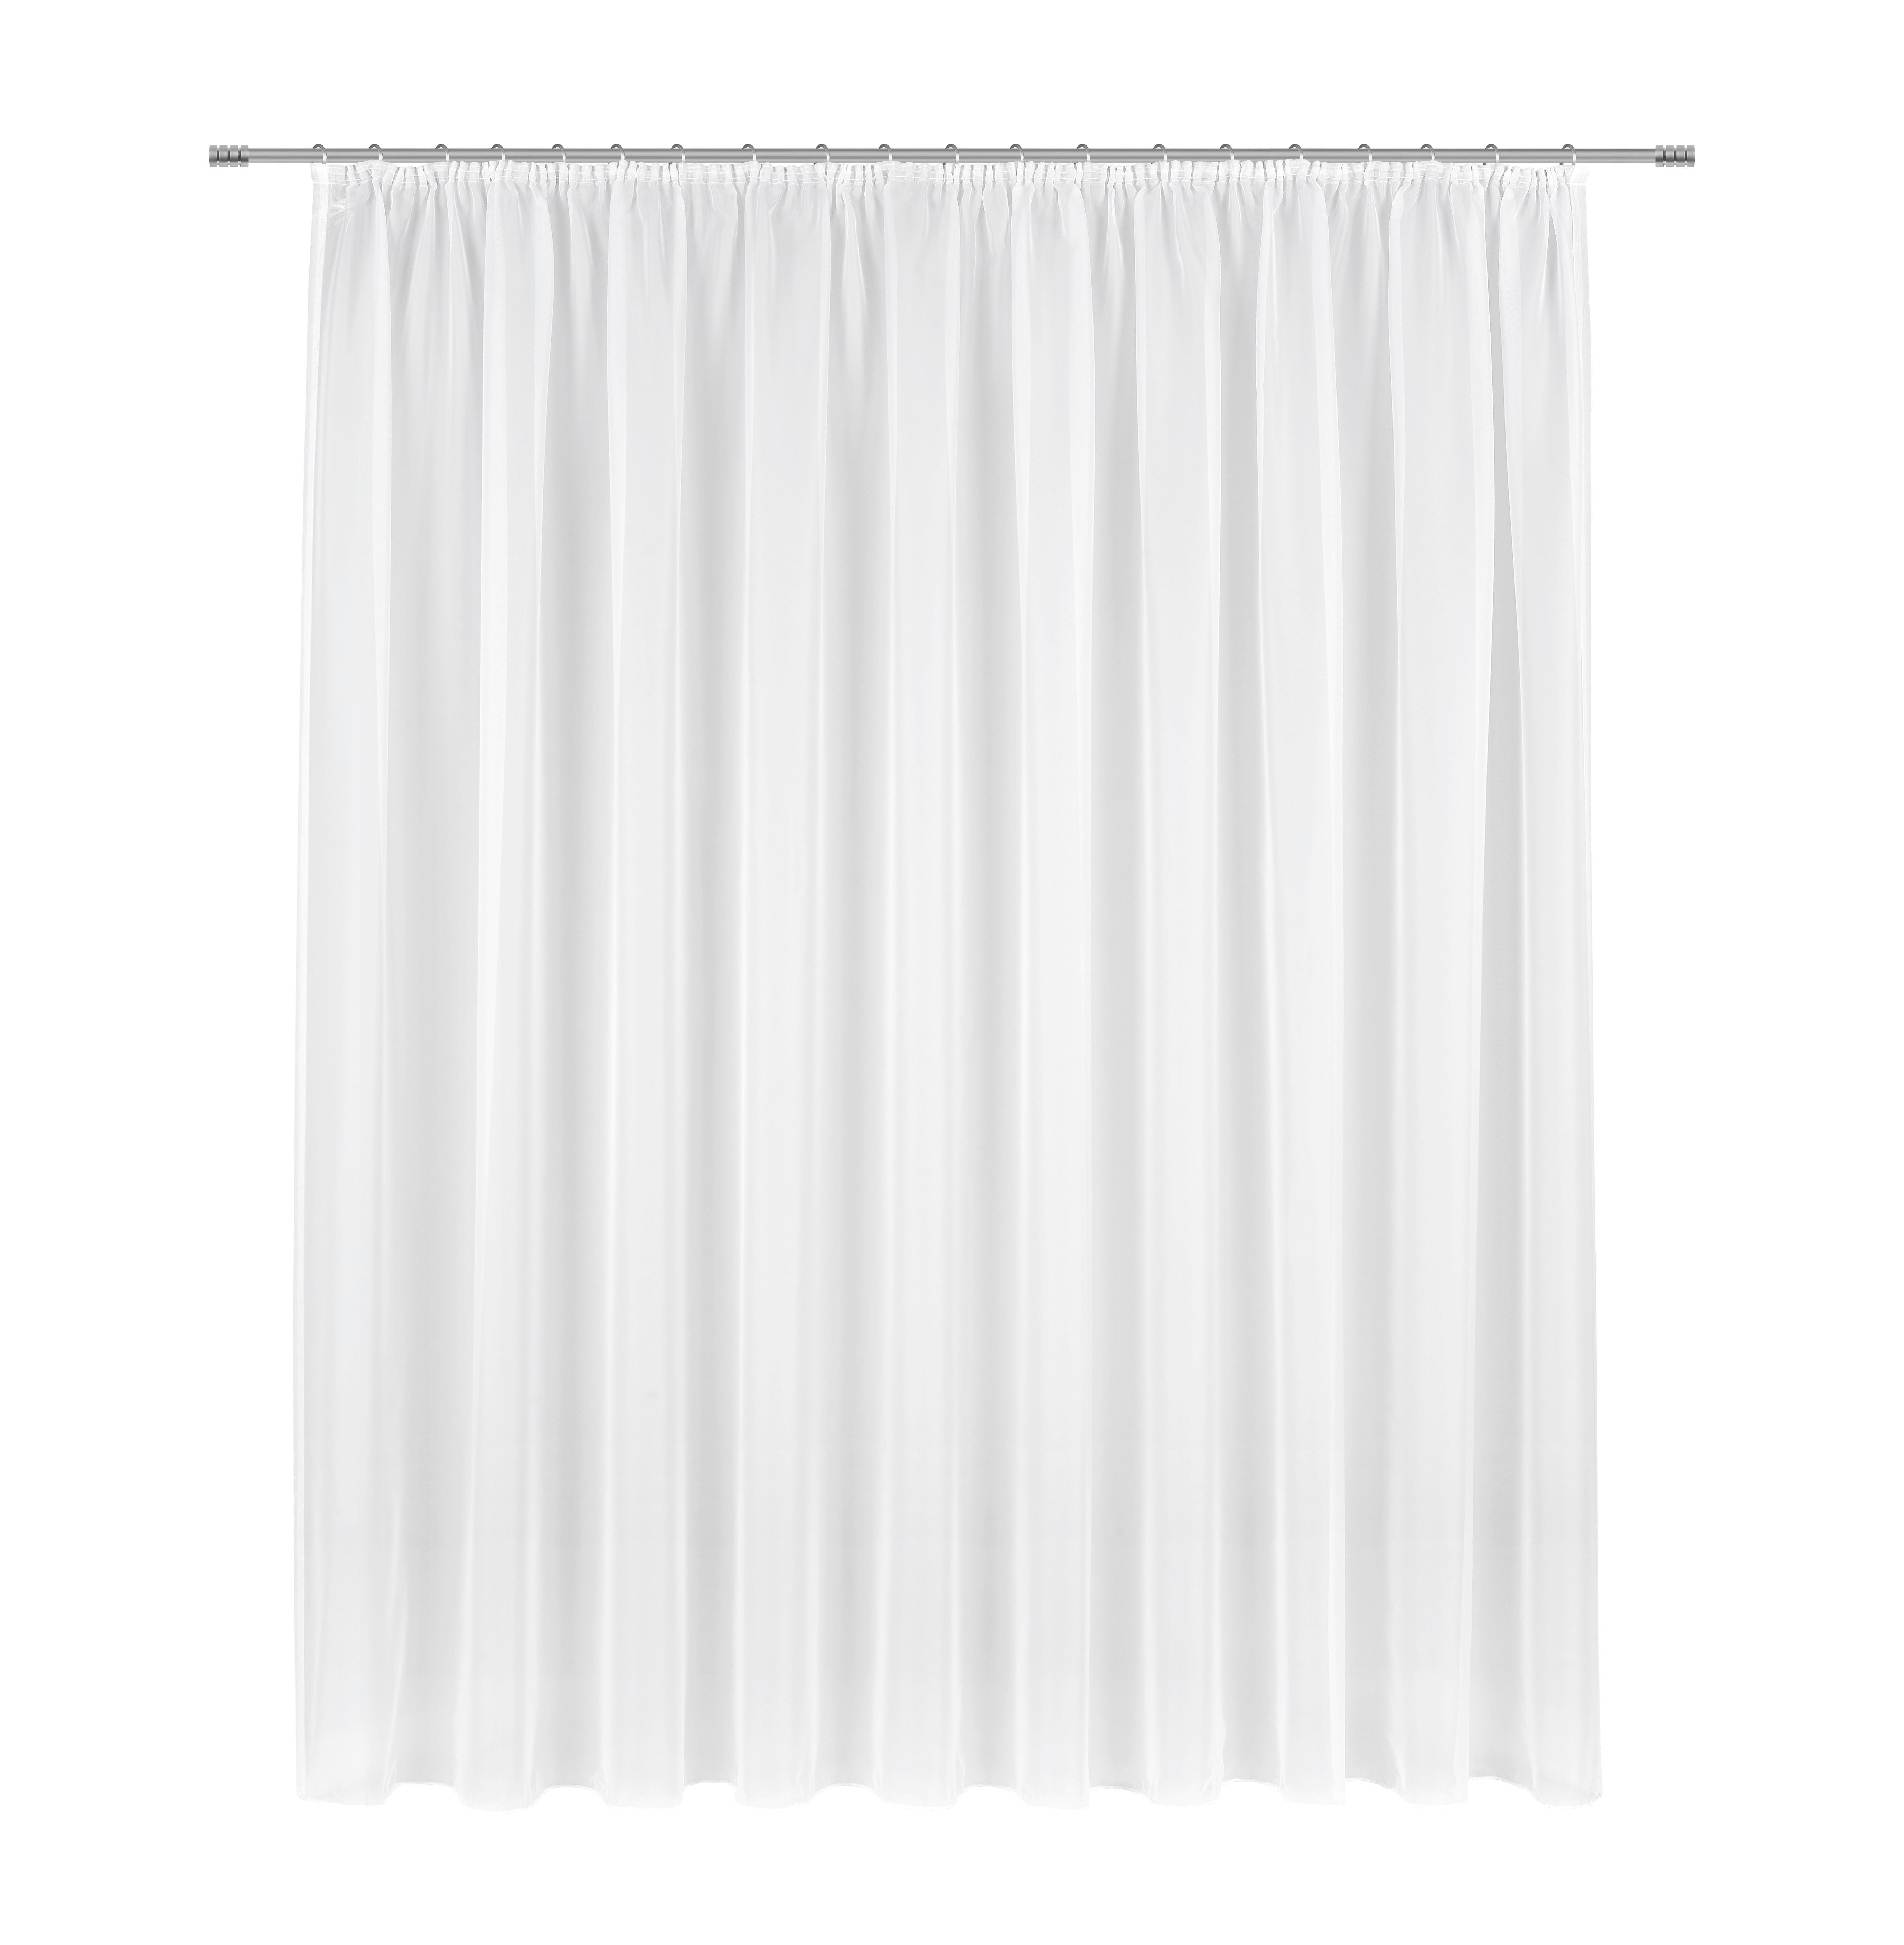 Készfüggöny Anna 300/175 - Fehér, konvencionális, Textil (300/175cm) - Modern Living